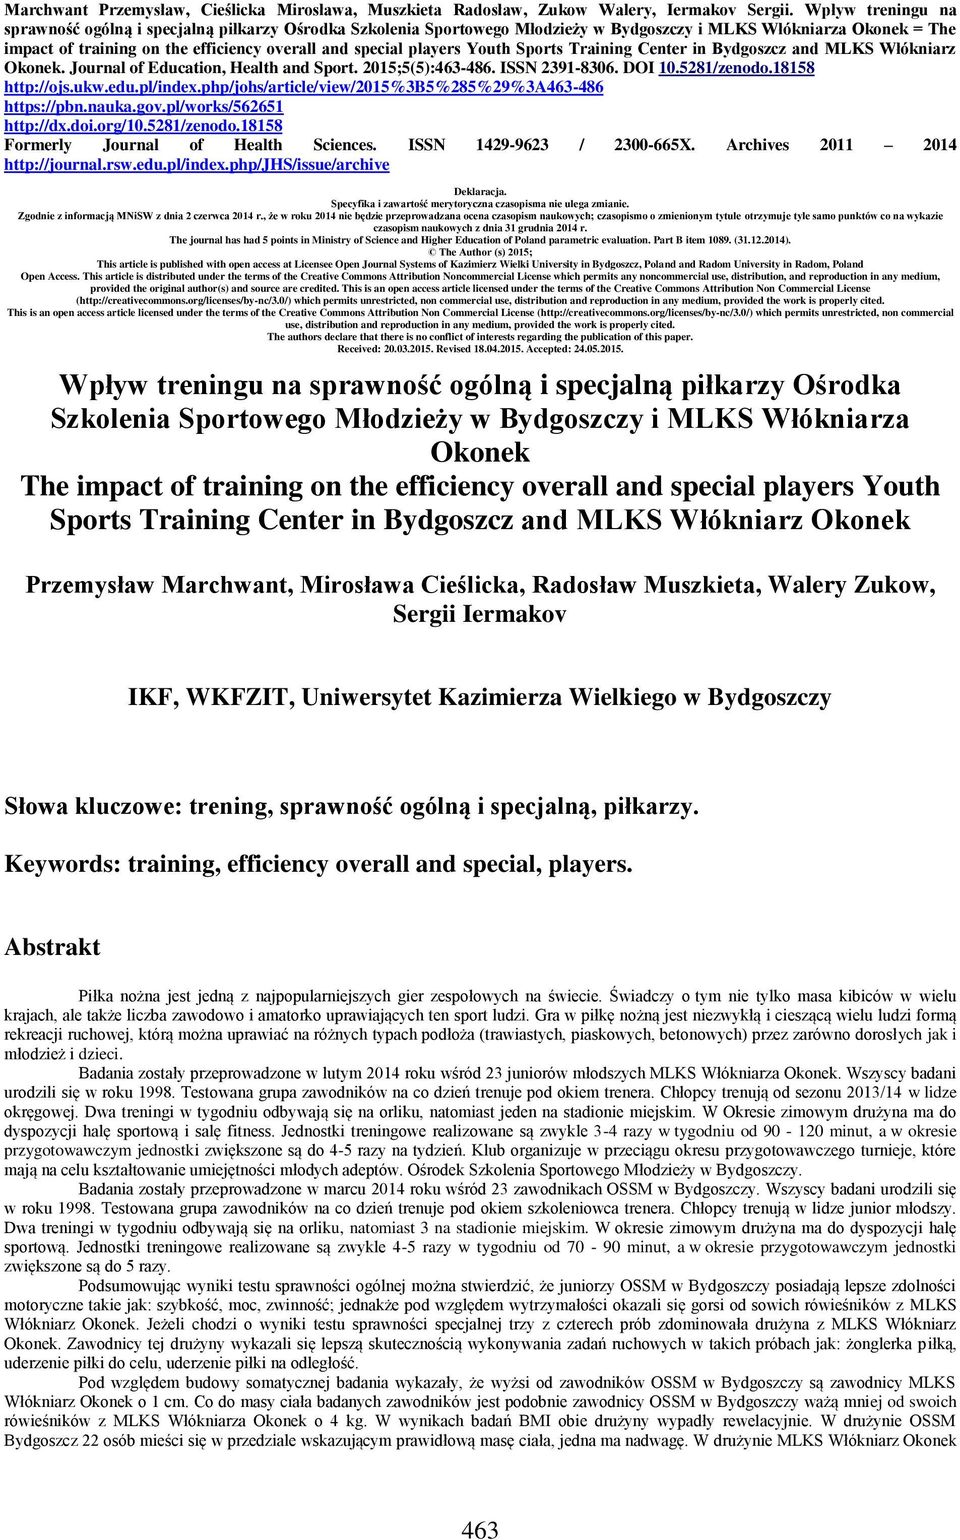 Youth Sports Training Center in Bydgoszcz and MLKS Włókniarz. Journal of Education, Health and Sport. 2015;5(5):463-486. ISSN 2391-8306. DOI 10.5281/zenodo.18158 http://ojs.ukw.edu.pl/index.